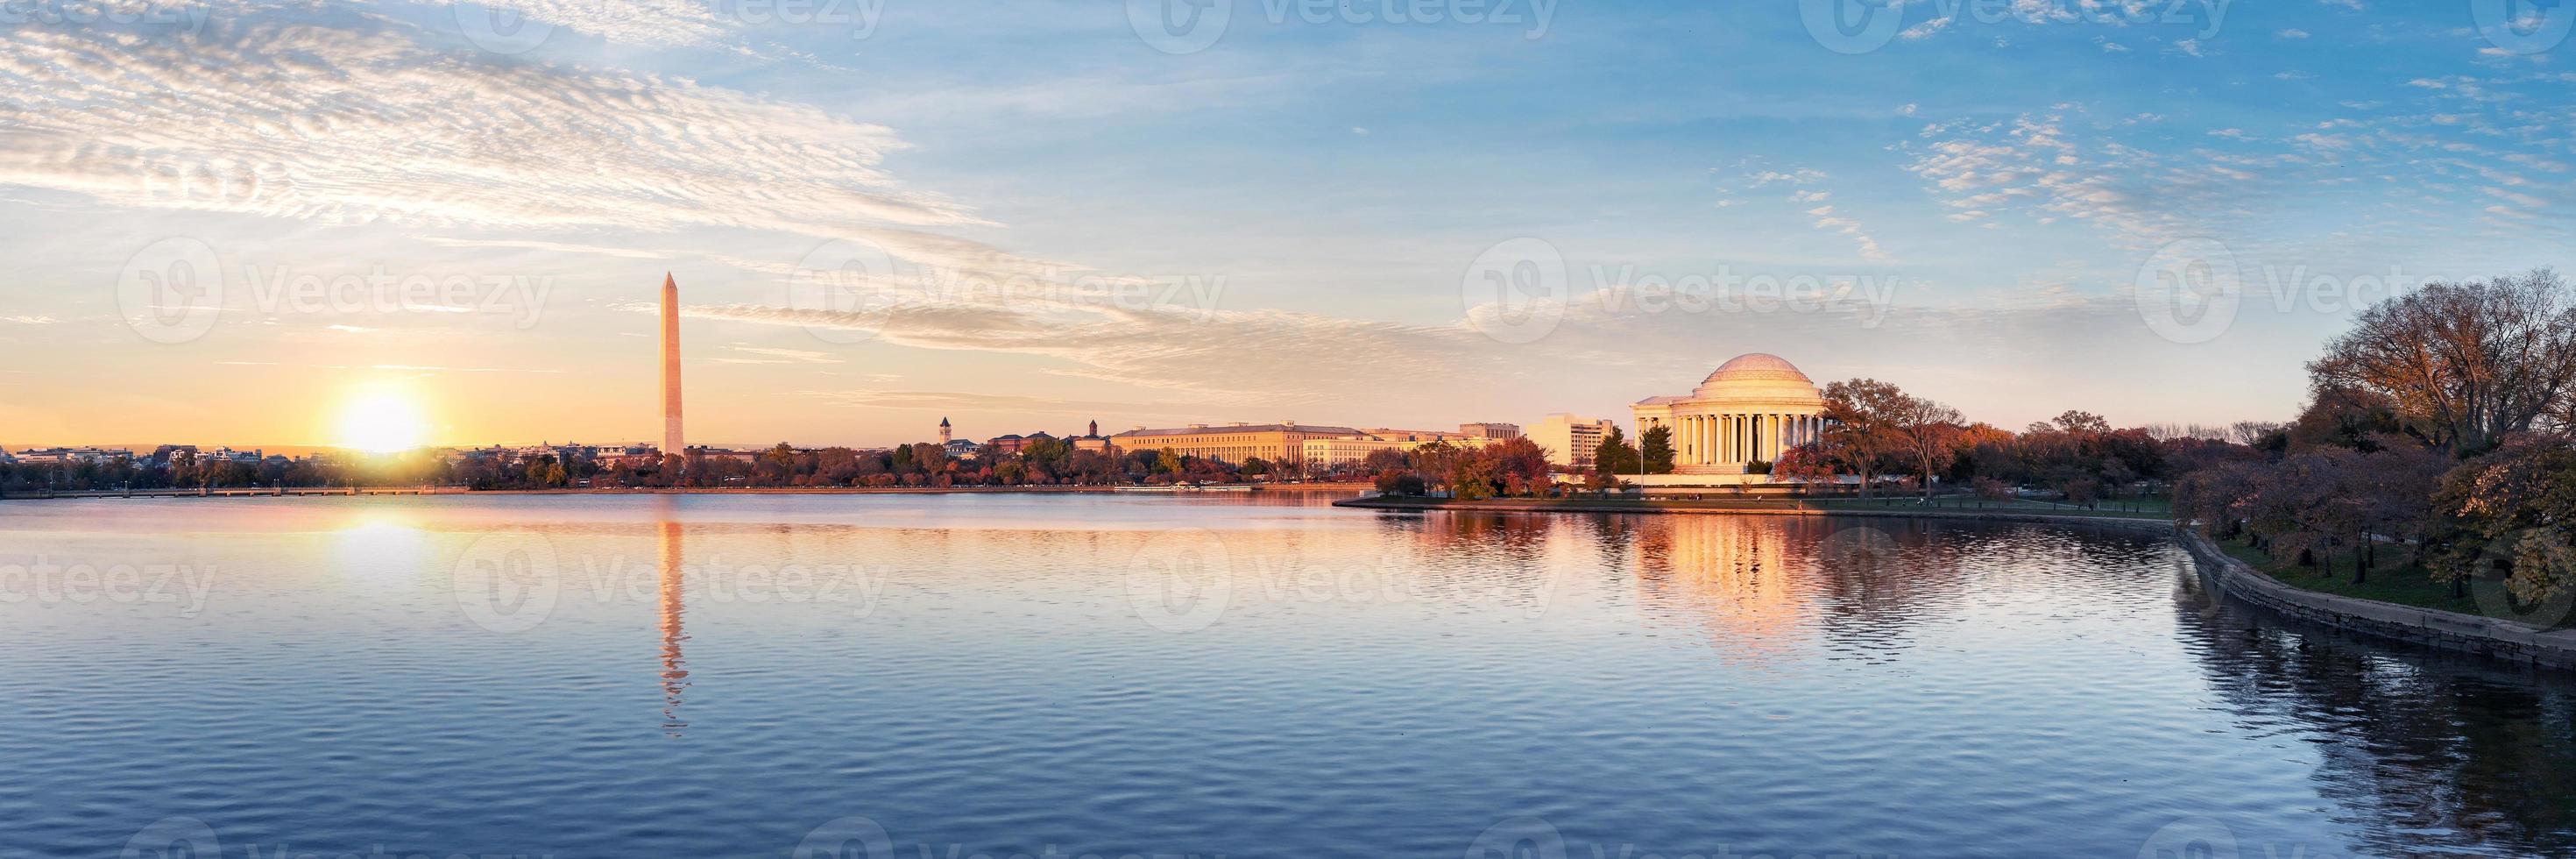 Jefferson Memorial e il monumento di Washington si riflette sul bacino di marea al mattino, Washington DC, Stati Uniti d'America foto